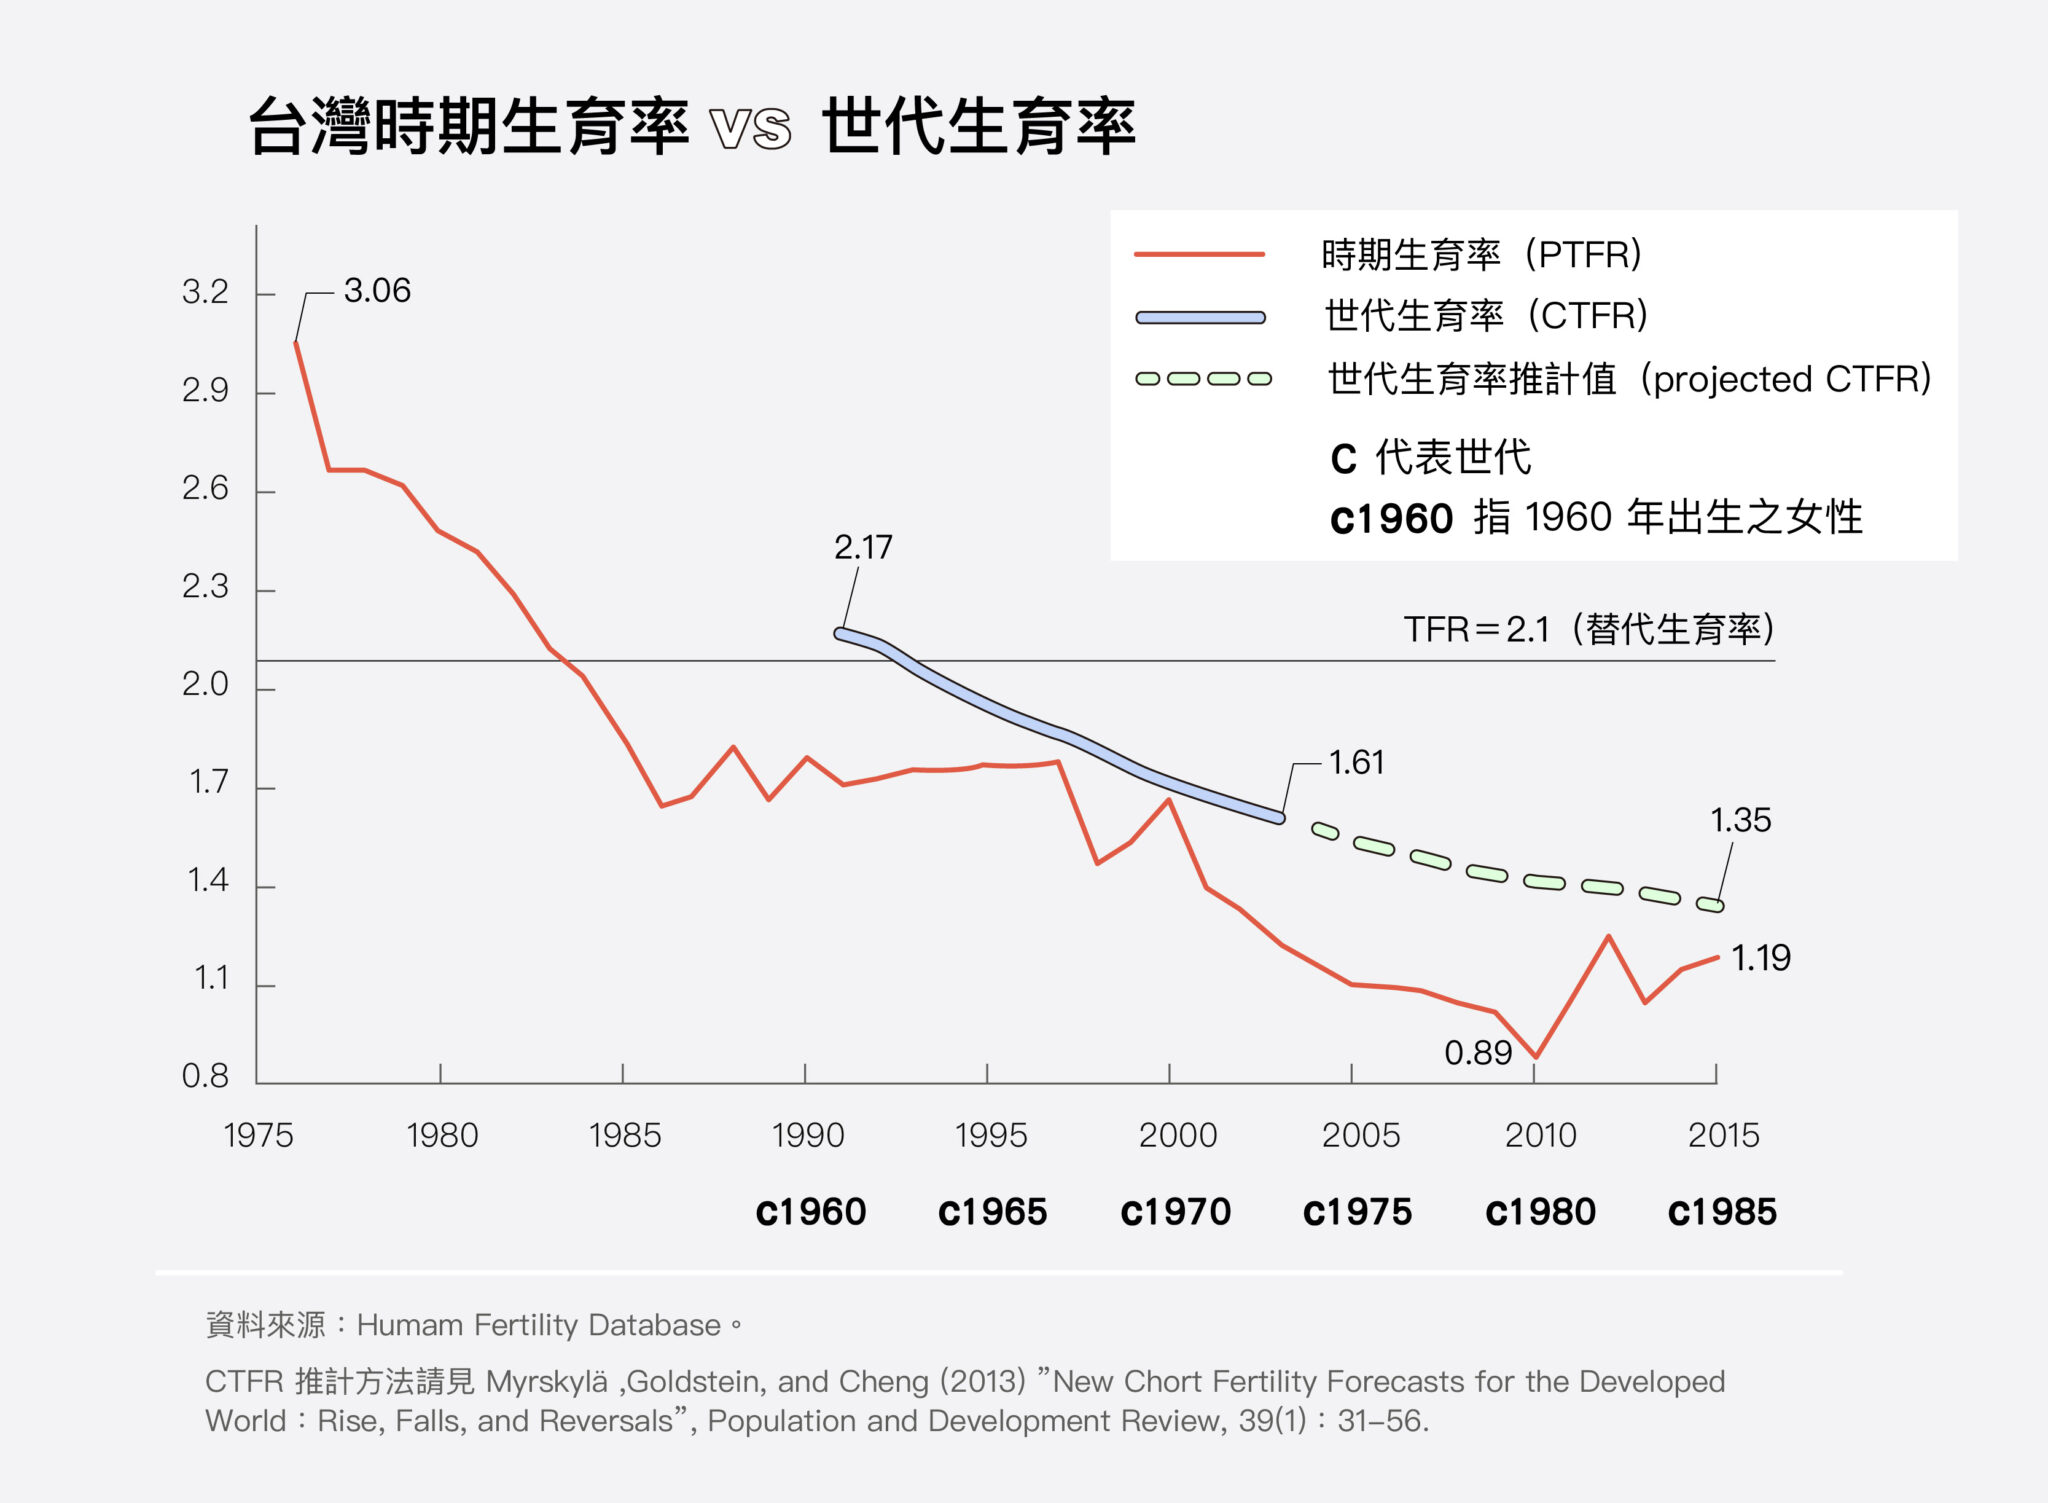 單看時期生育率，臺灣 1985 年已跌至 2 以下；但世代生育率一直到 1965 年世代才低於 2 人。PTFR 呈現的只是單一時點的生育概況，必須同時檢視真實世代的 CTFR，才能分析低生育率的形成主因。